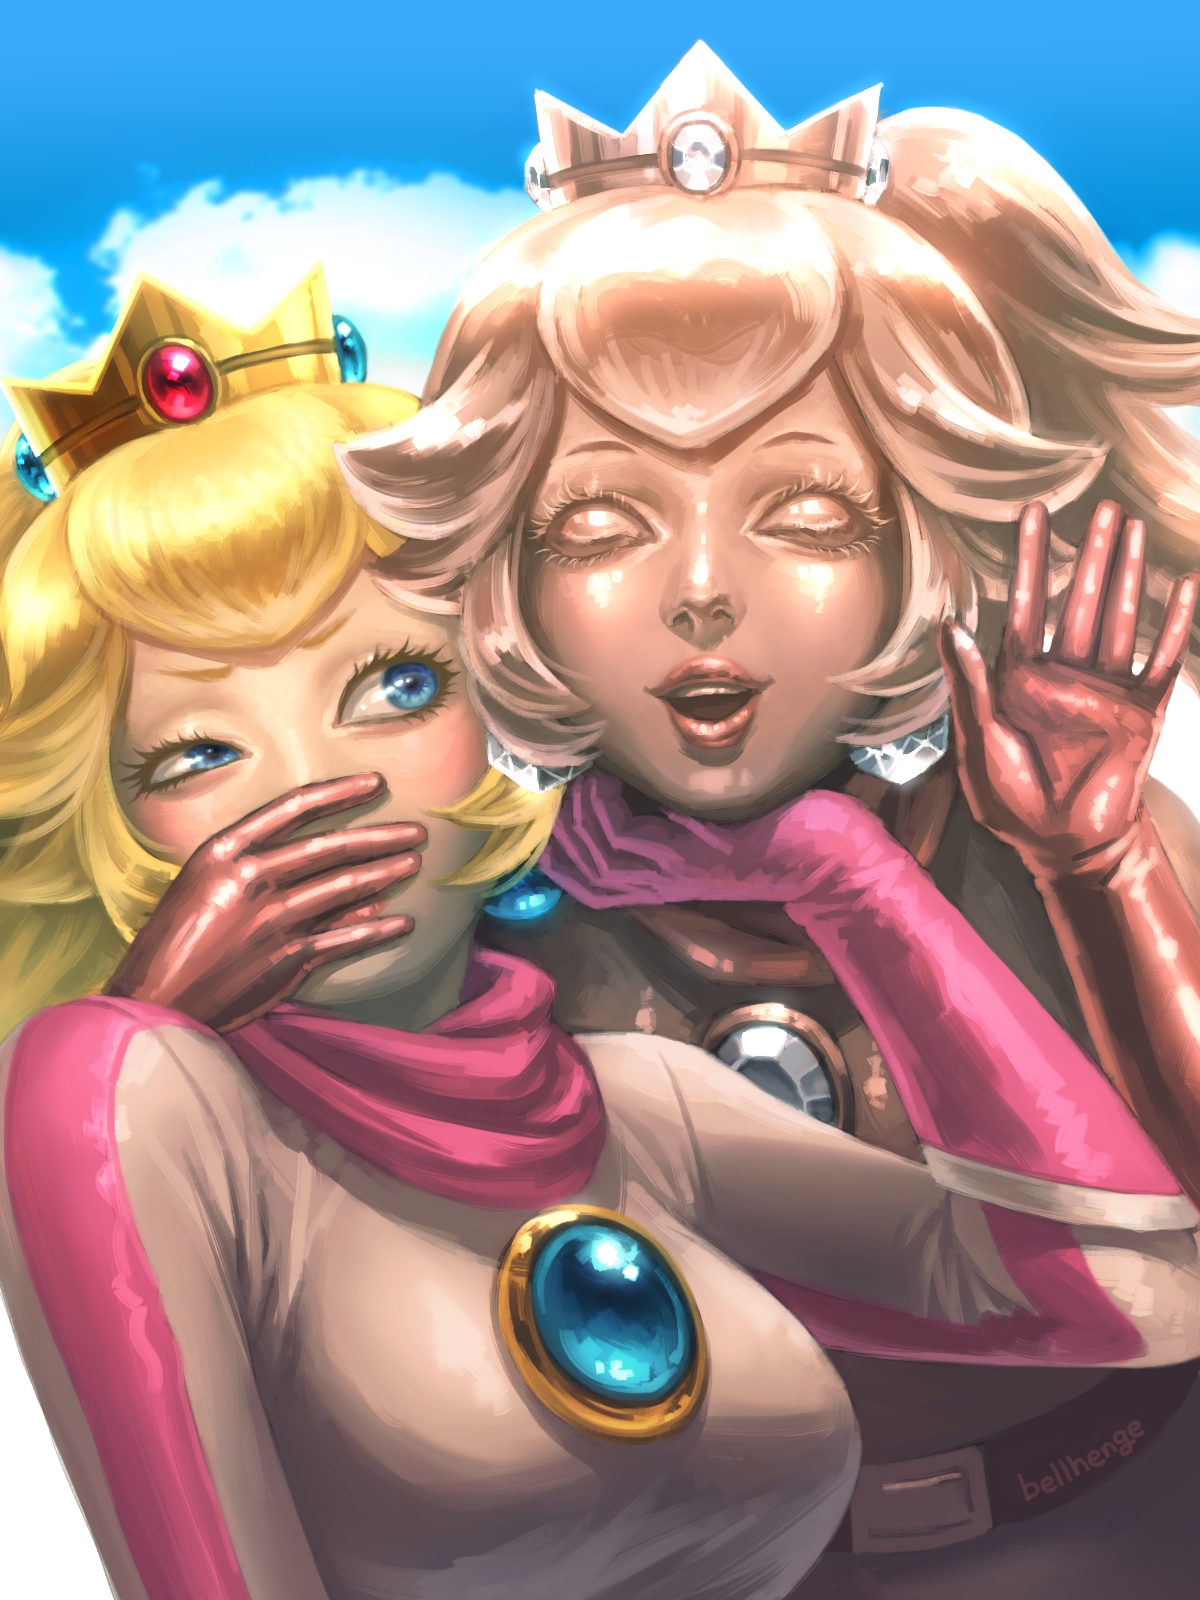 Gold Princess Peach Porn - Options